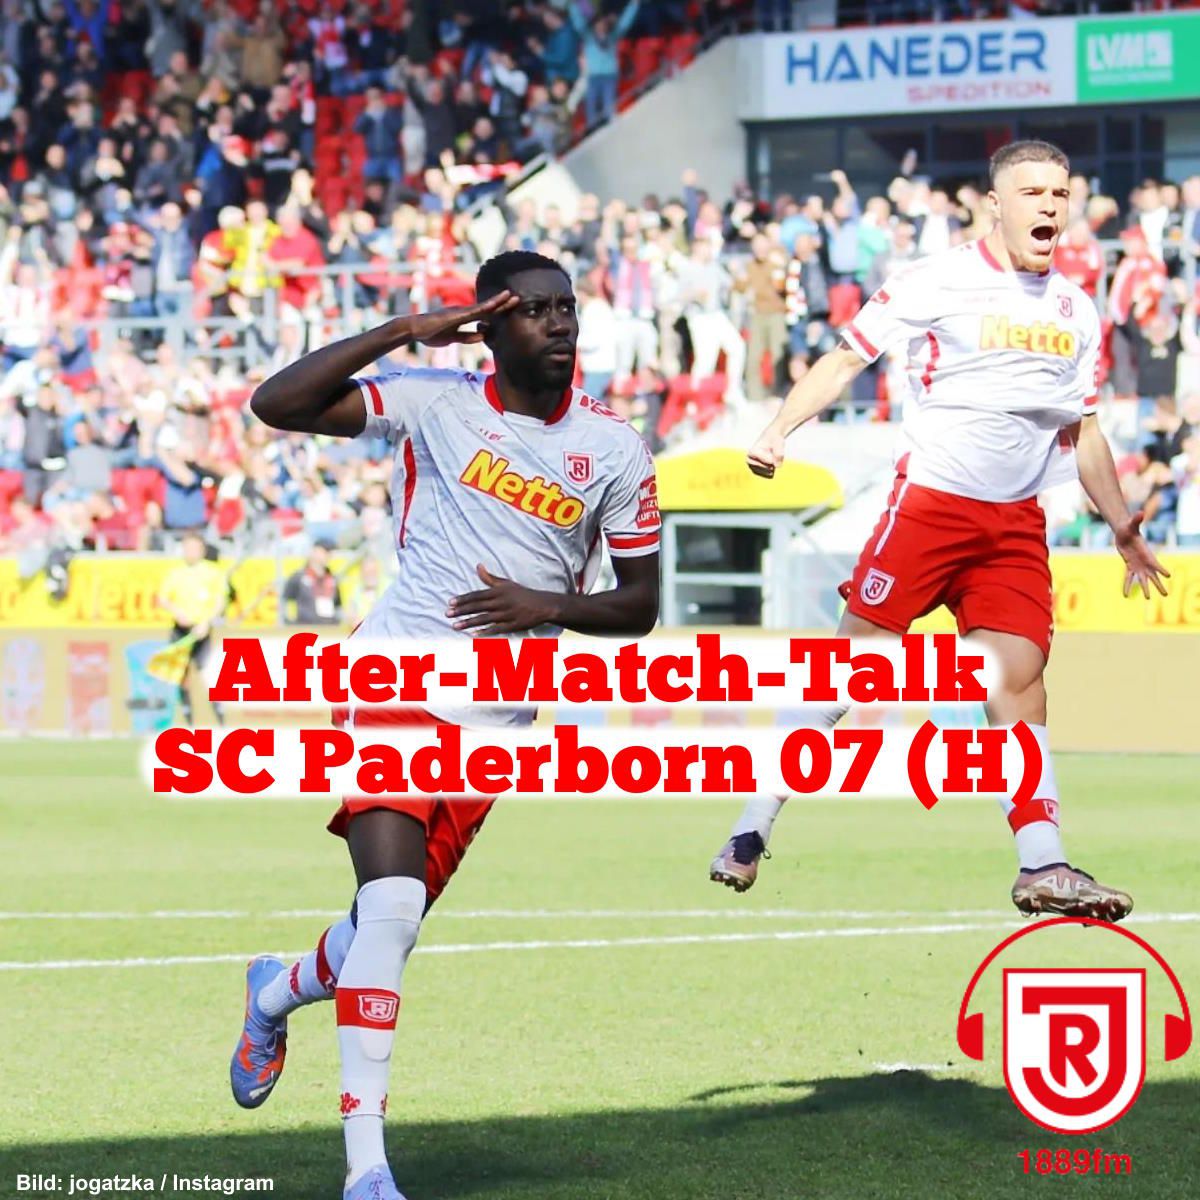 After-Match-Talk: SSV Jahn Regensburg - SC Paderborn